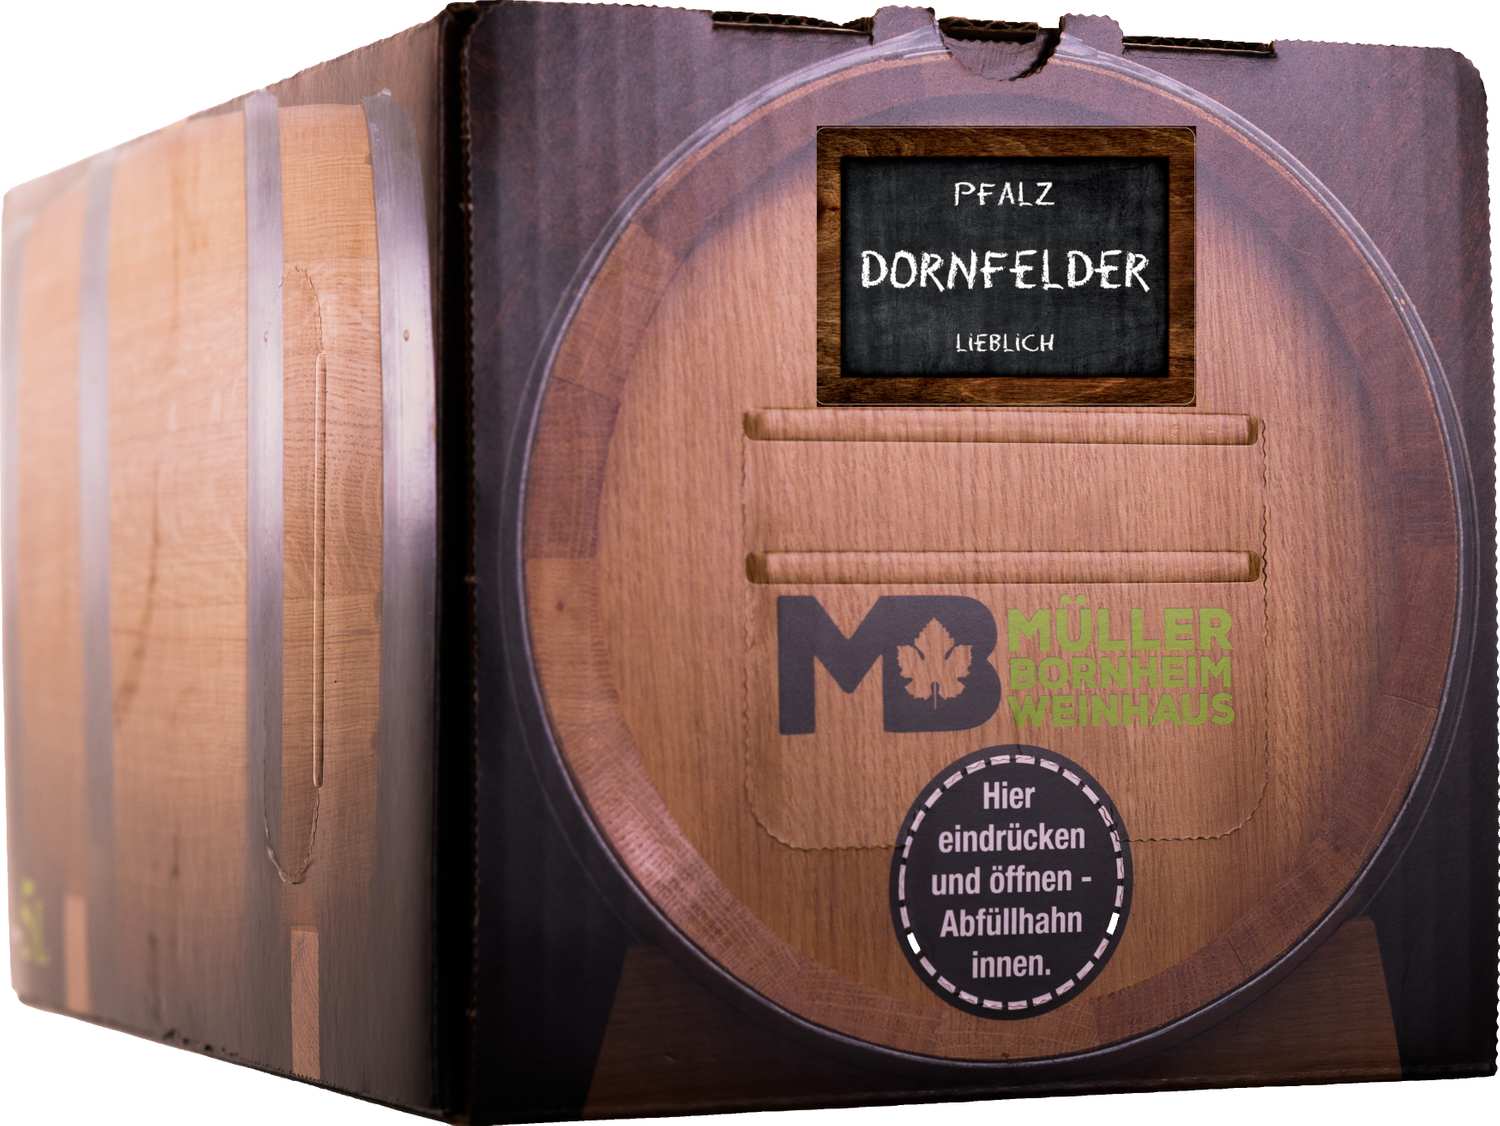 Dornfelder Rotwein lieblich Bag in Box